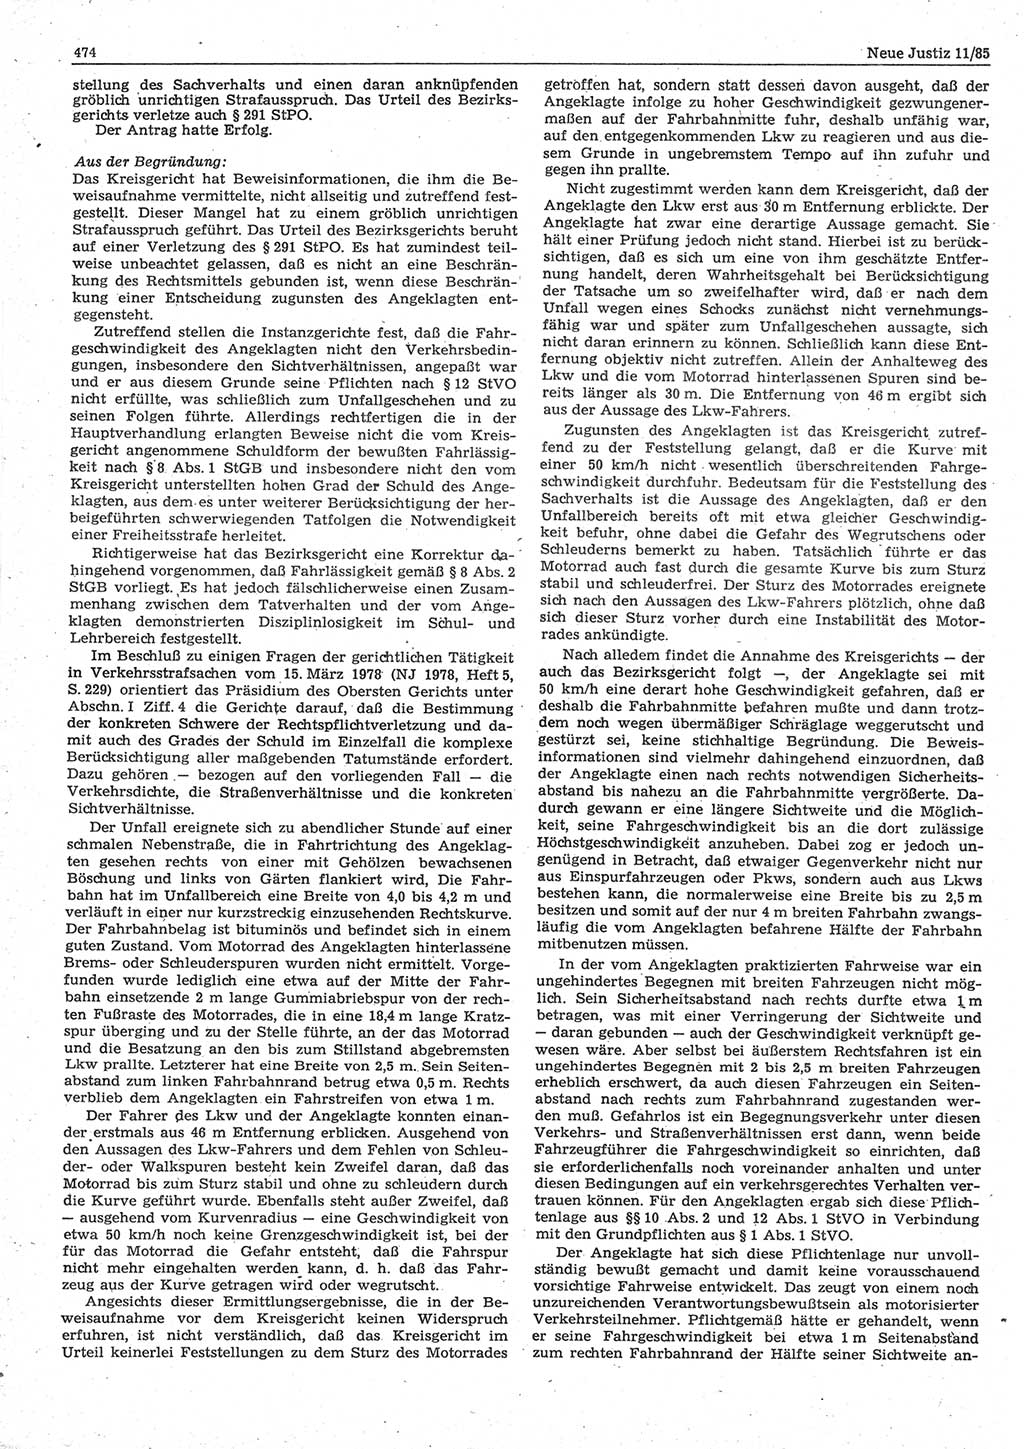 Neue Justiz (NJ), Zeitschrift für sozialistisches Recht und Gesetzlichkeit [Deutsche Demokratische Republik (DDR)], 39. Jahrgang 1985, Seite 474 (NJ DDR 1985, S. 474)